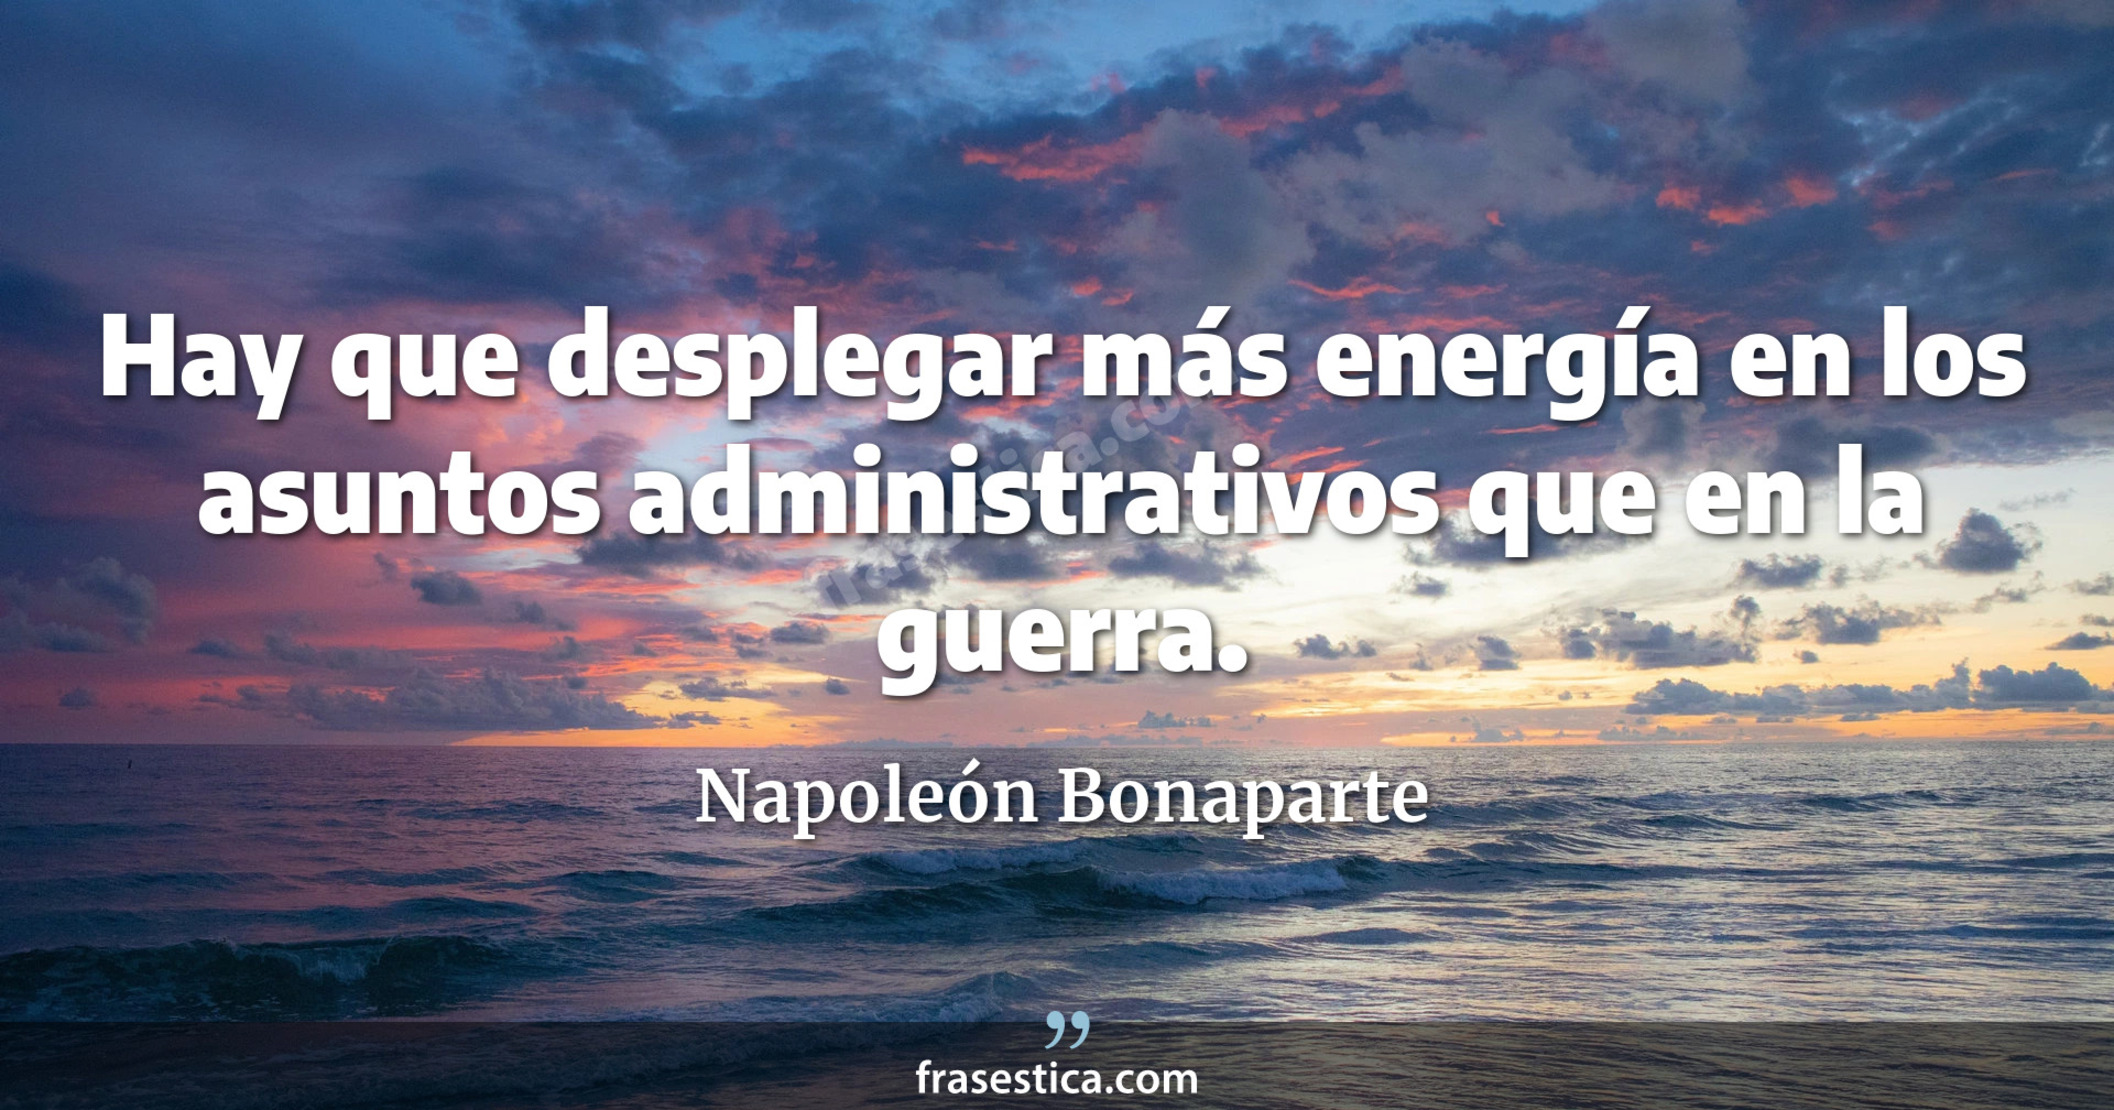 Hay que desplegar más energía en los asuntos administrativos que en la guerra. - Napoleón Bonaparte